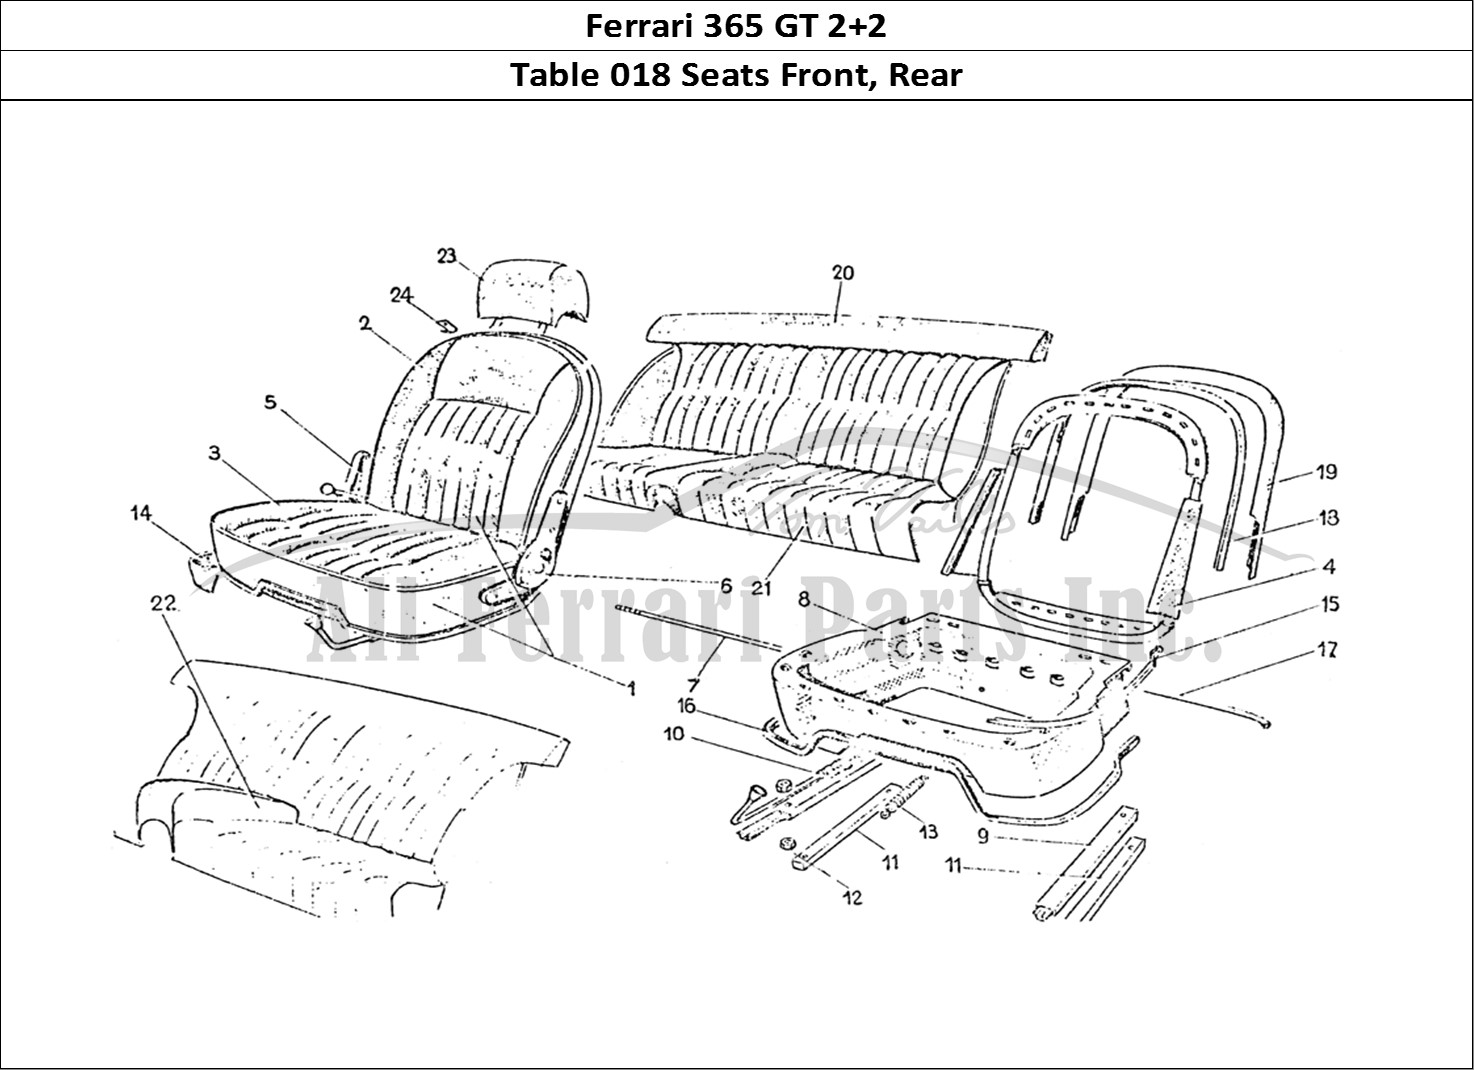 Ferrari Parts Ferrari 365 GT 2+2 (Coachwork) Page 018 Front & Rear seats